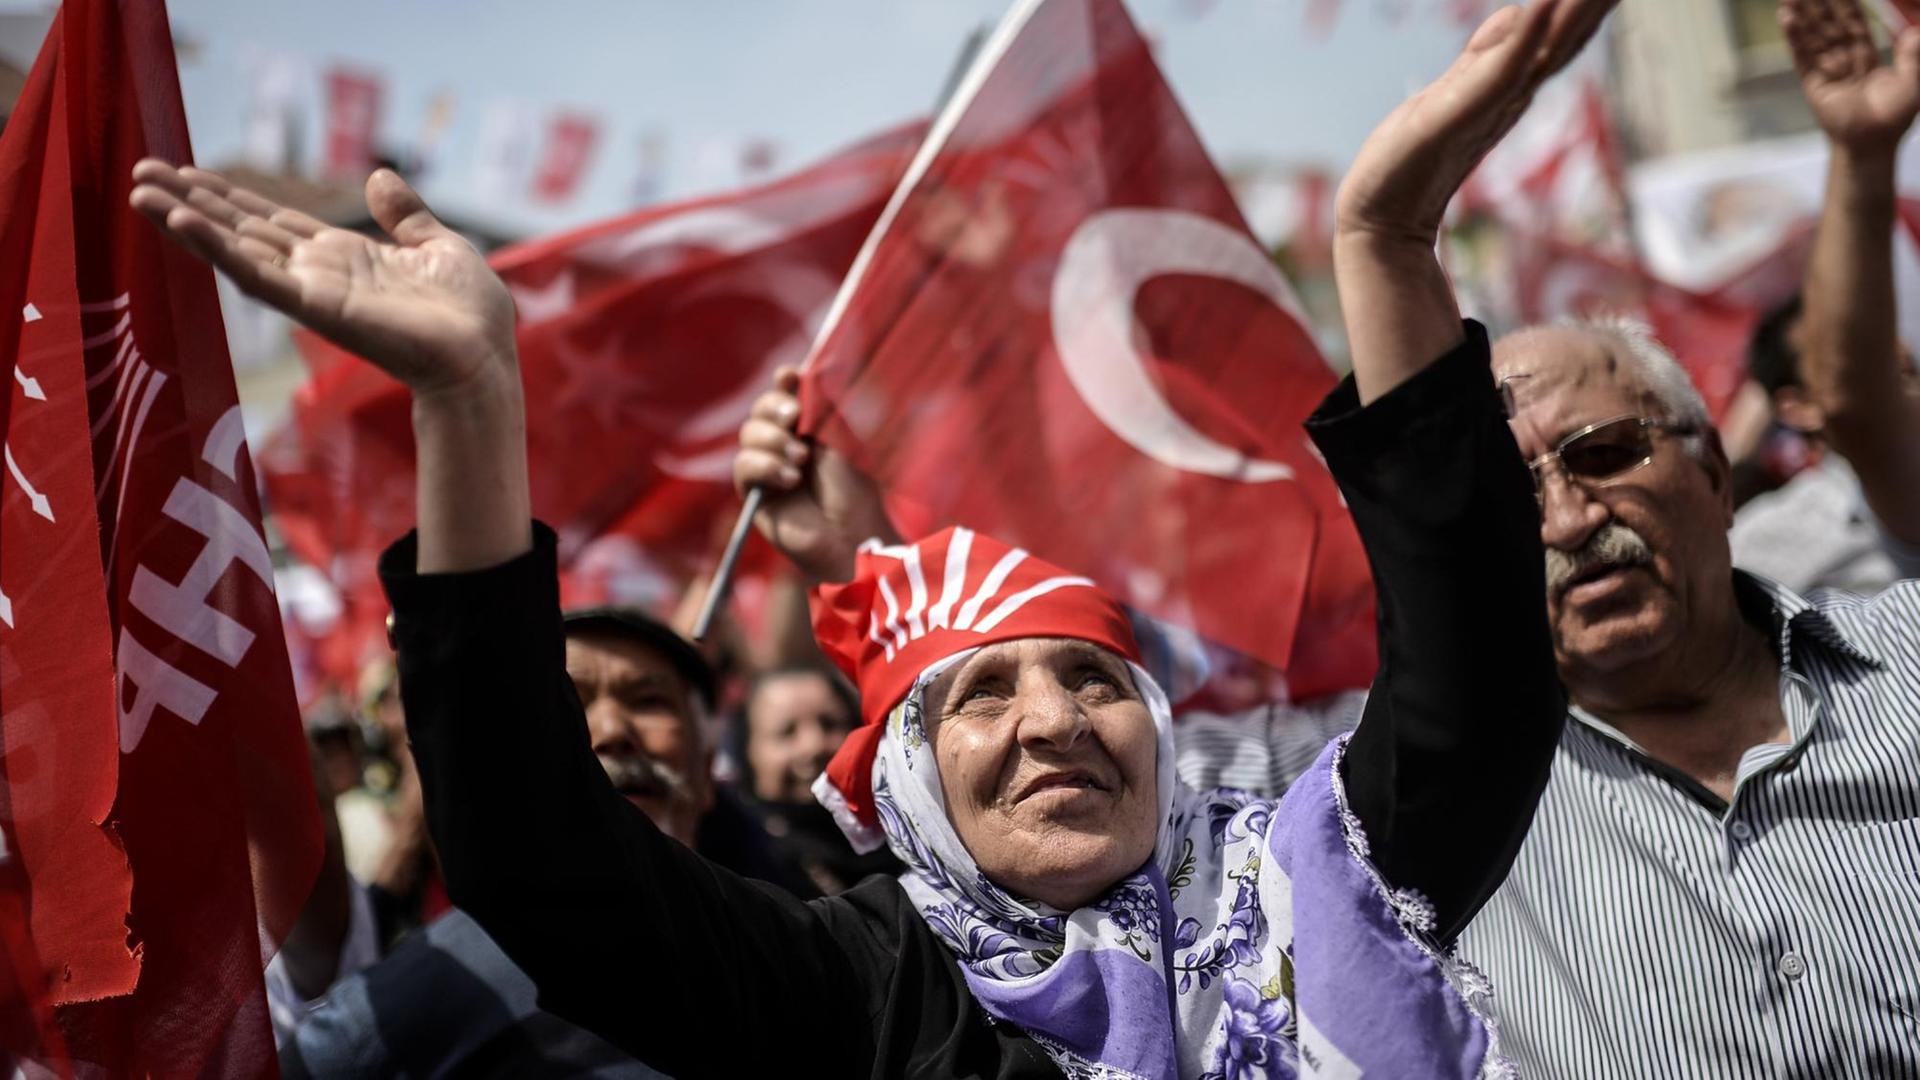 Anhänger der größten türkischen Oppositionspartei CHP feuern ihren Spitzenkandidaten während einer Wahlkundgebung in Istanbul an.